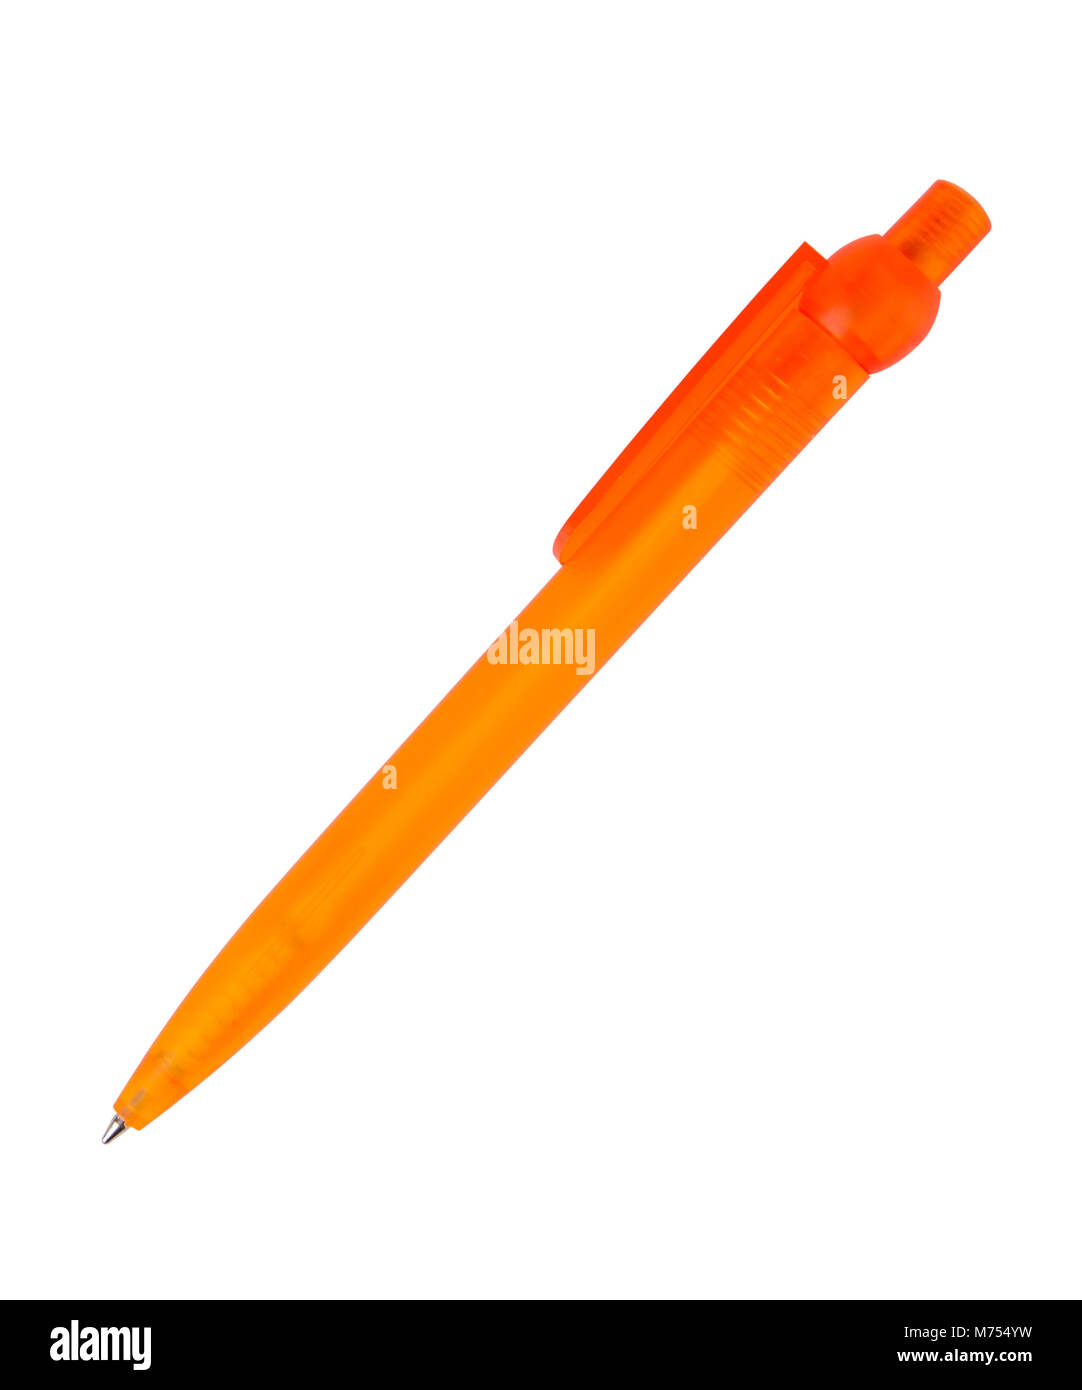 Bolígrafo de plástico naranja aislado en blanco Foto de stock